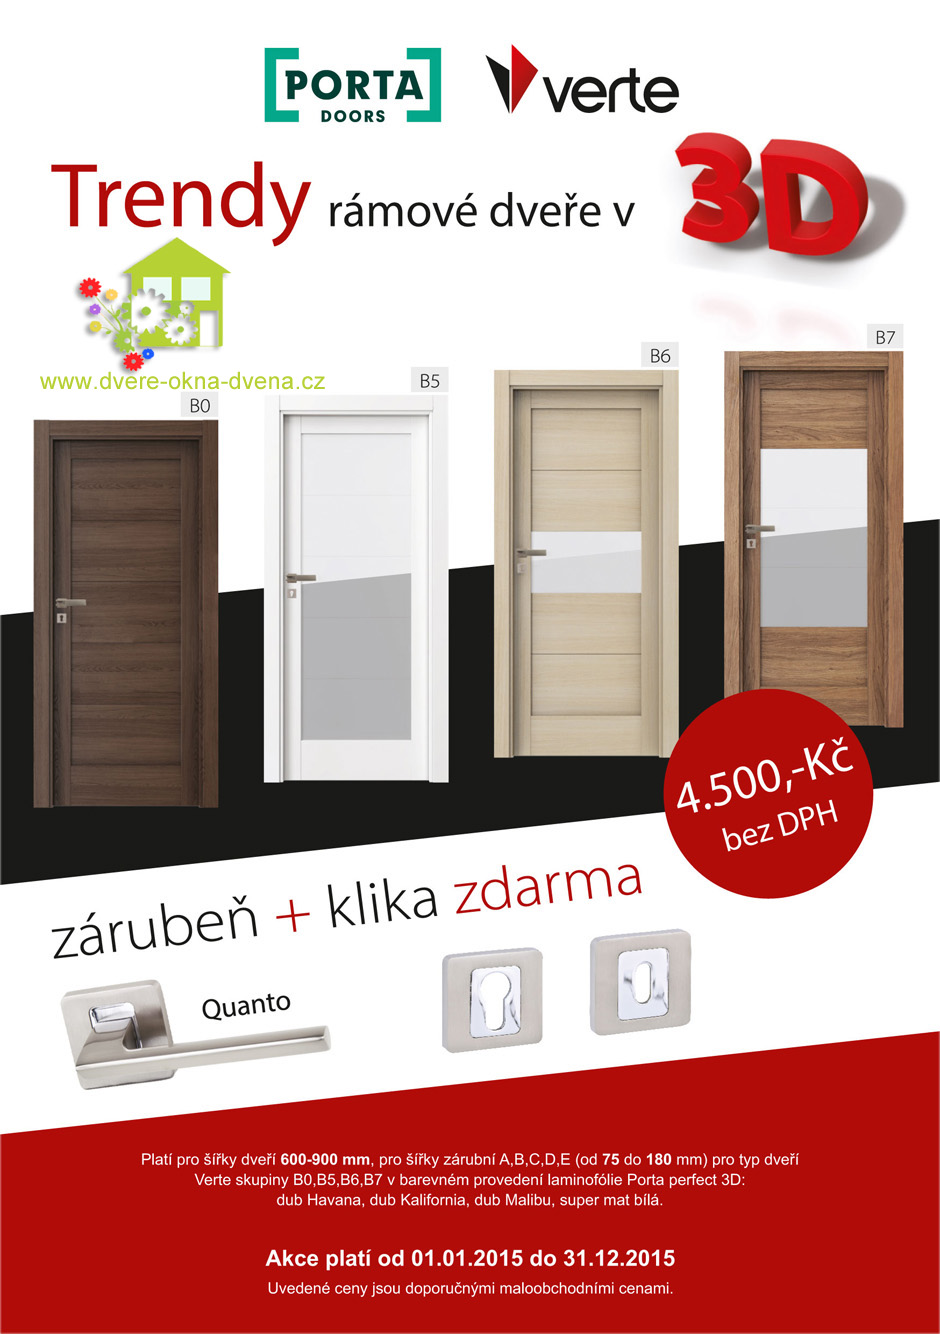 Adkce na dveře - Dveře-okna-Dvena Hradec Králové